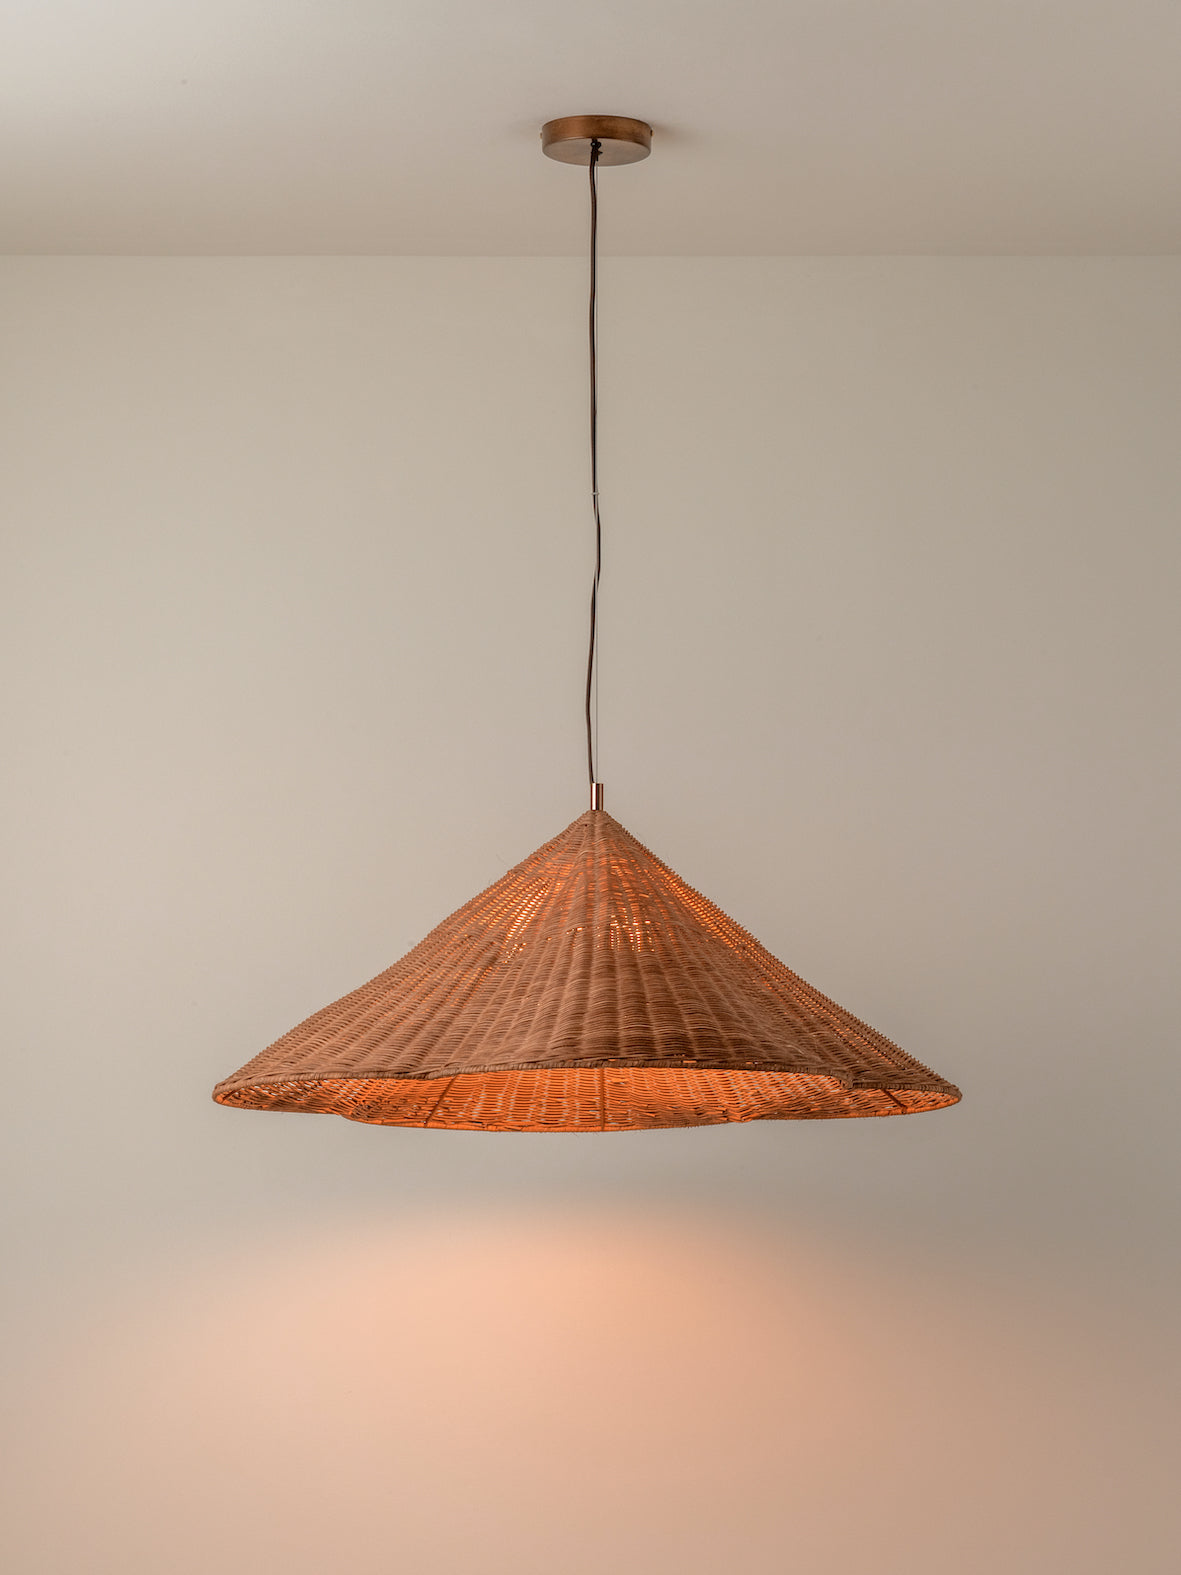 Bardi - 1 light oversized scalloped rattan pendant | Ceiling Light | Lights & Lamps Inc | Modern Affordable Designer Lighting | USA